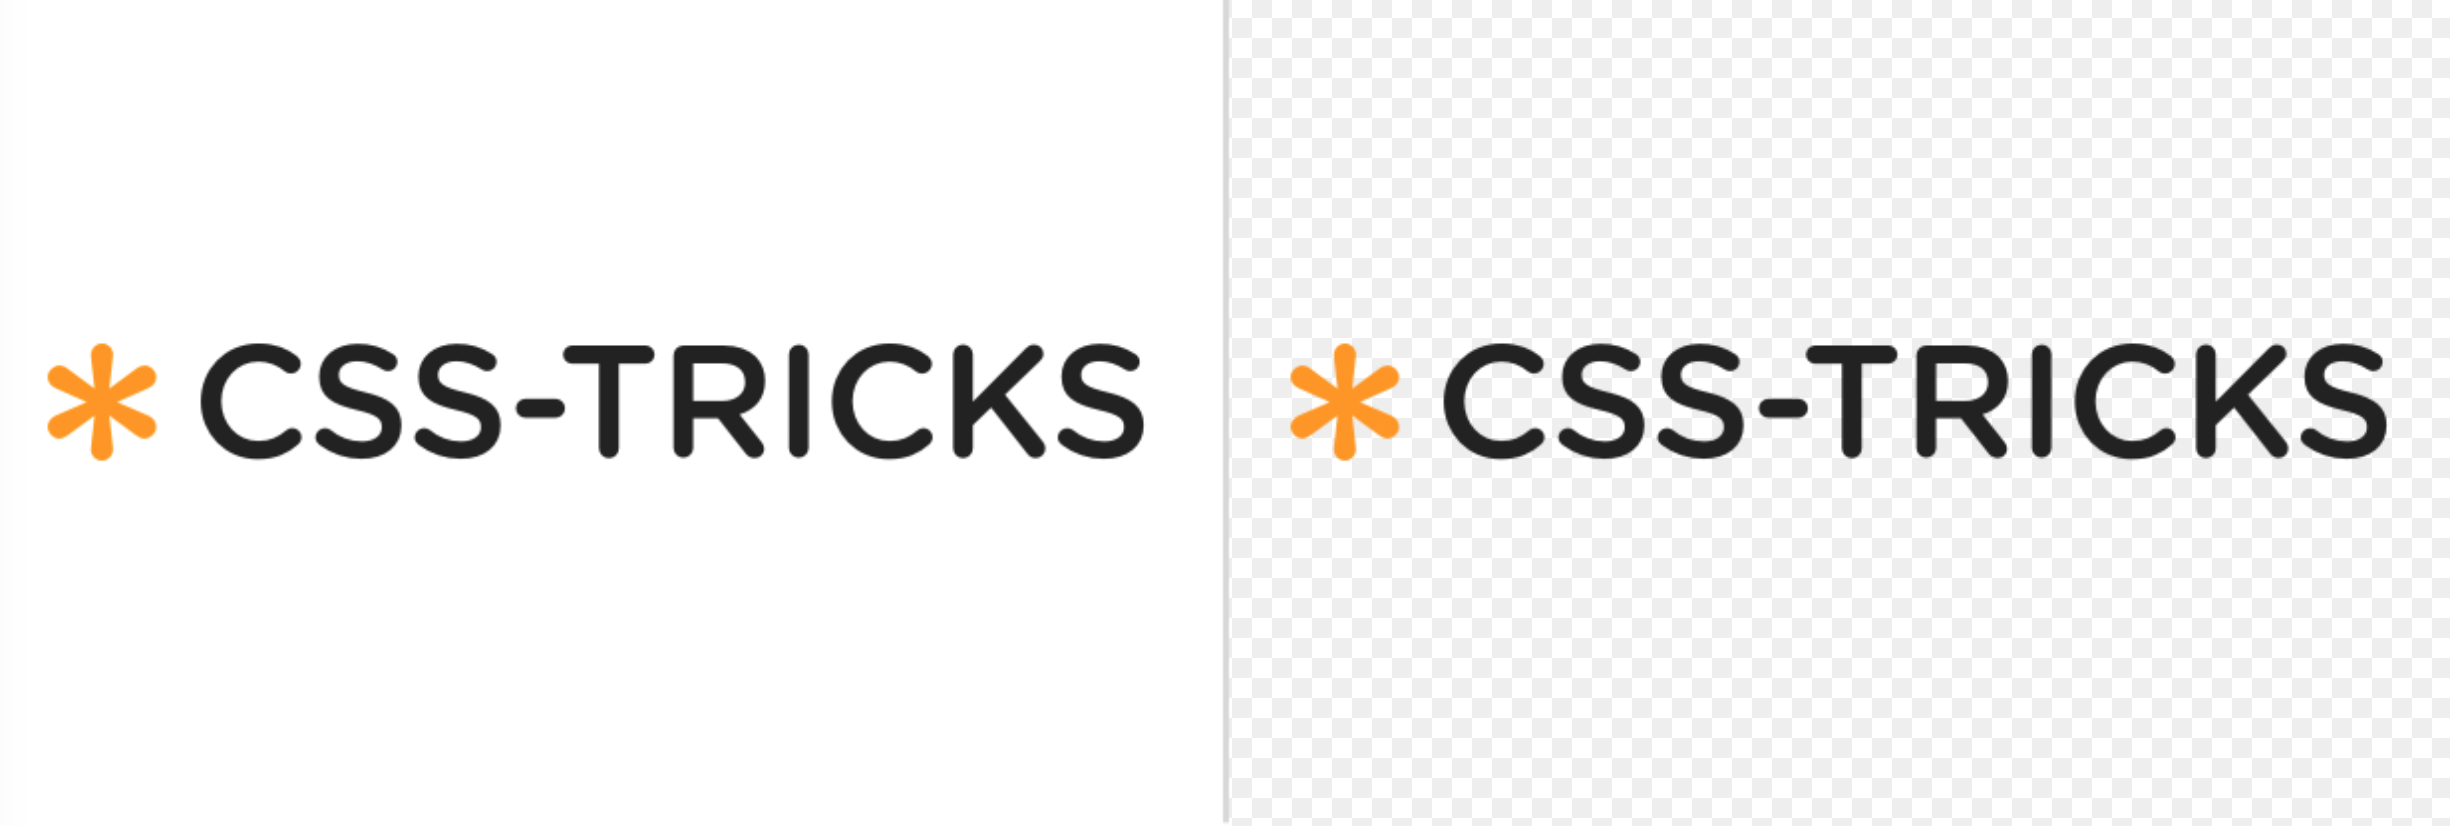 Css tricks. CSS Tricks logo. Html-трюк. Формат изображения поддерживает прозрачность CSS.